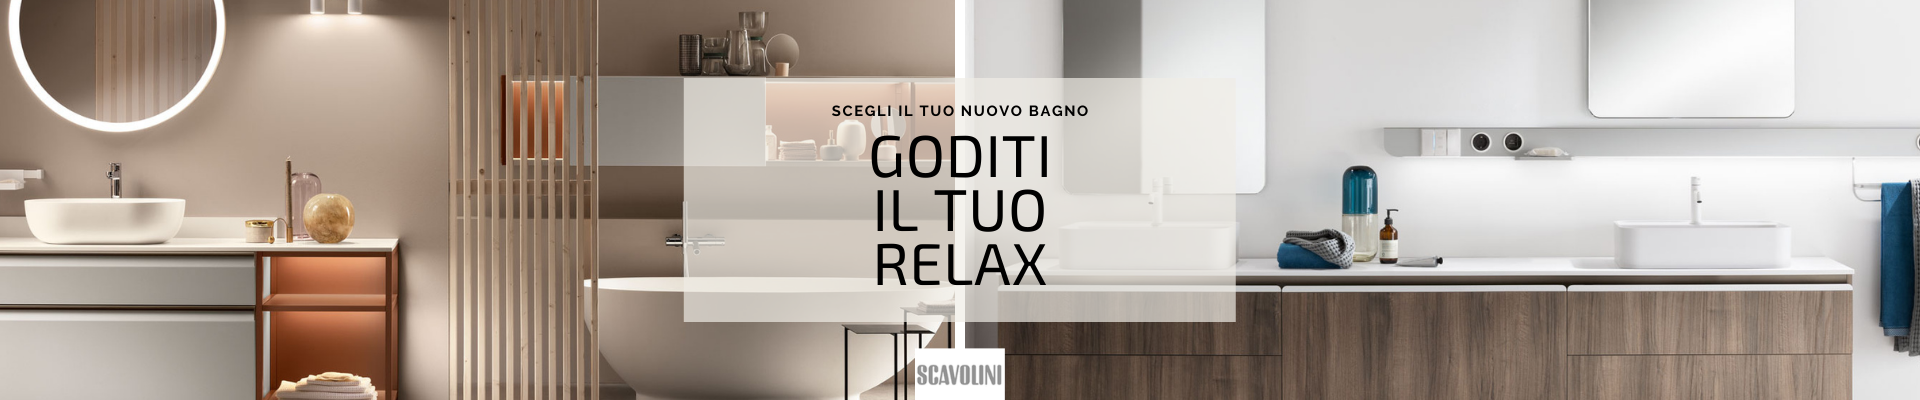 Arredo bagno Scavolini - Mobili Dal Degan Store ufficiale Verona